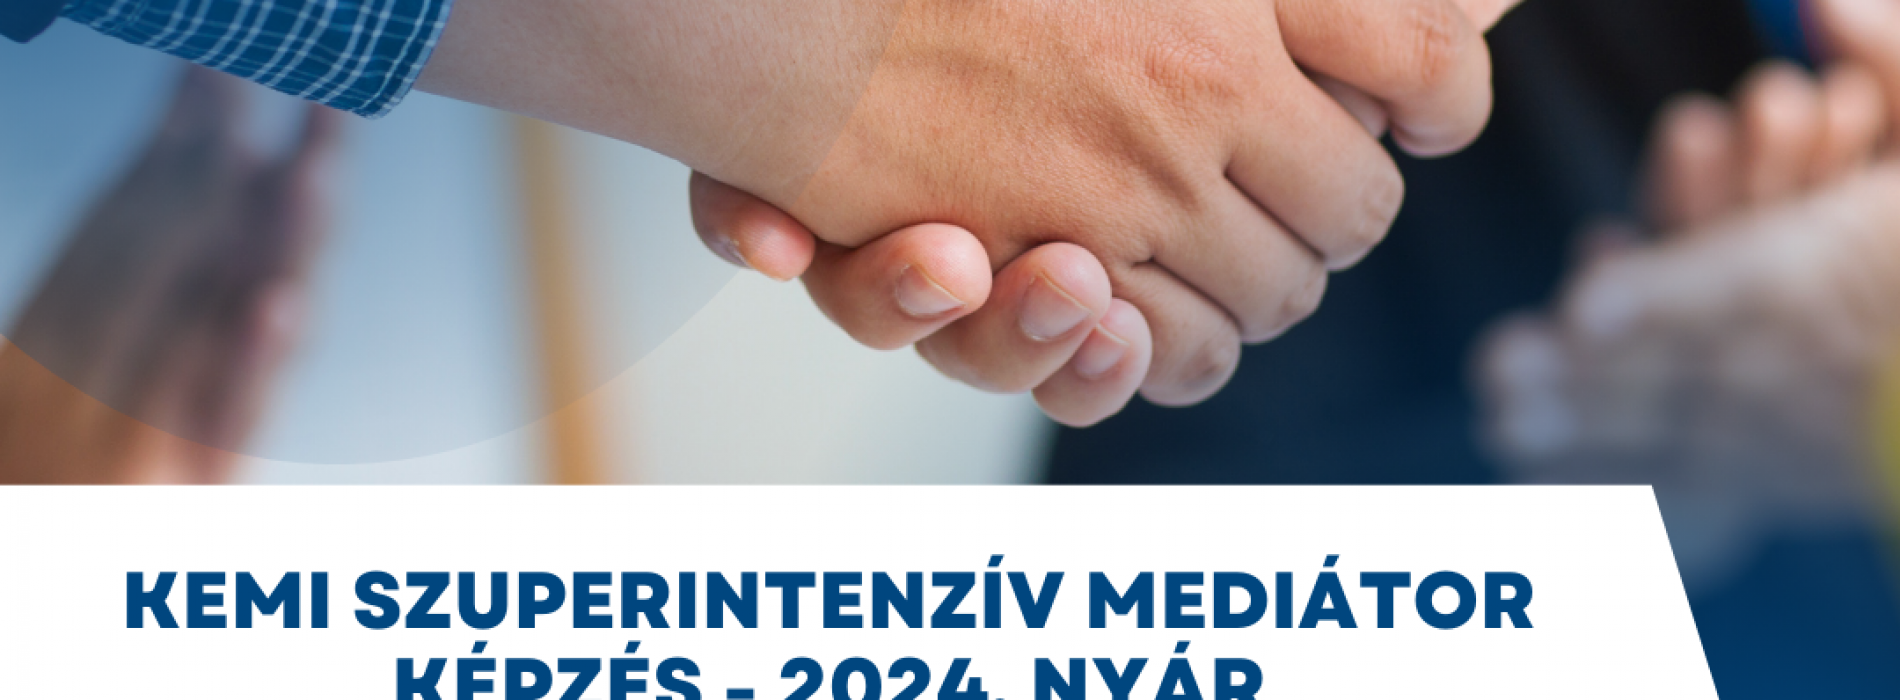 KEMI szuperintenzív mediátor képzés - 2024. nyár